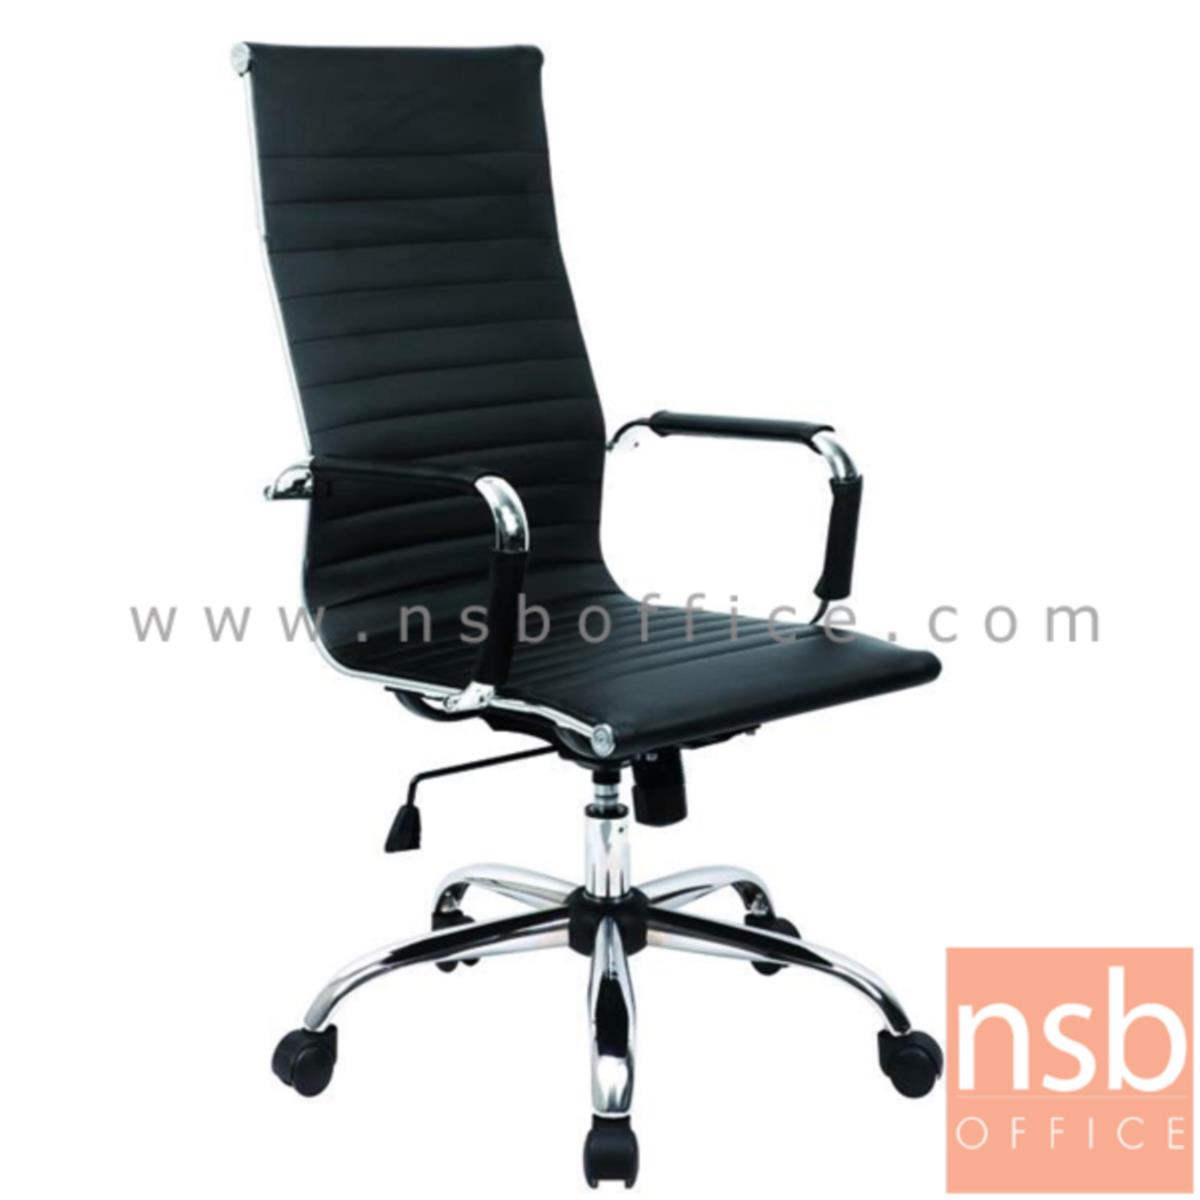 B01A382:เก้าอี้ผู้บริหาร รุ่น Tiara (เทียร่า)  โช๊คแก๊ส มีก้อนโยก ขาเหล็กชุบโครเมี่ยม